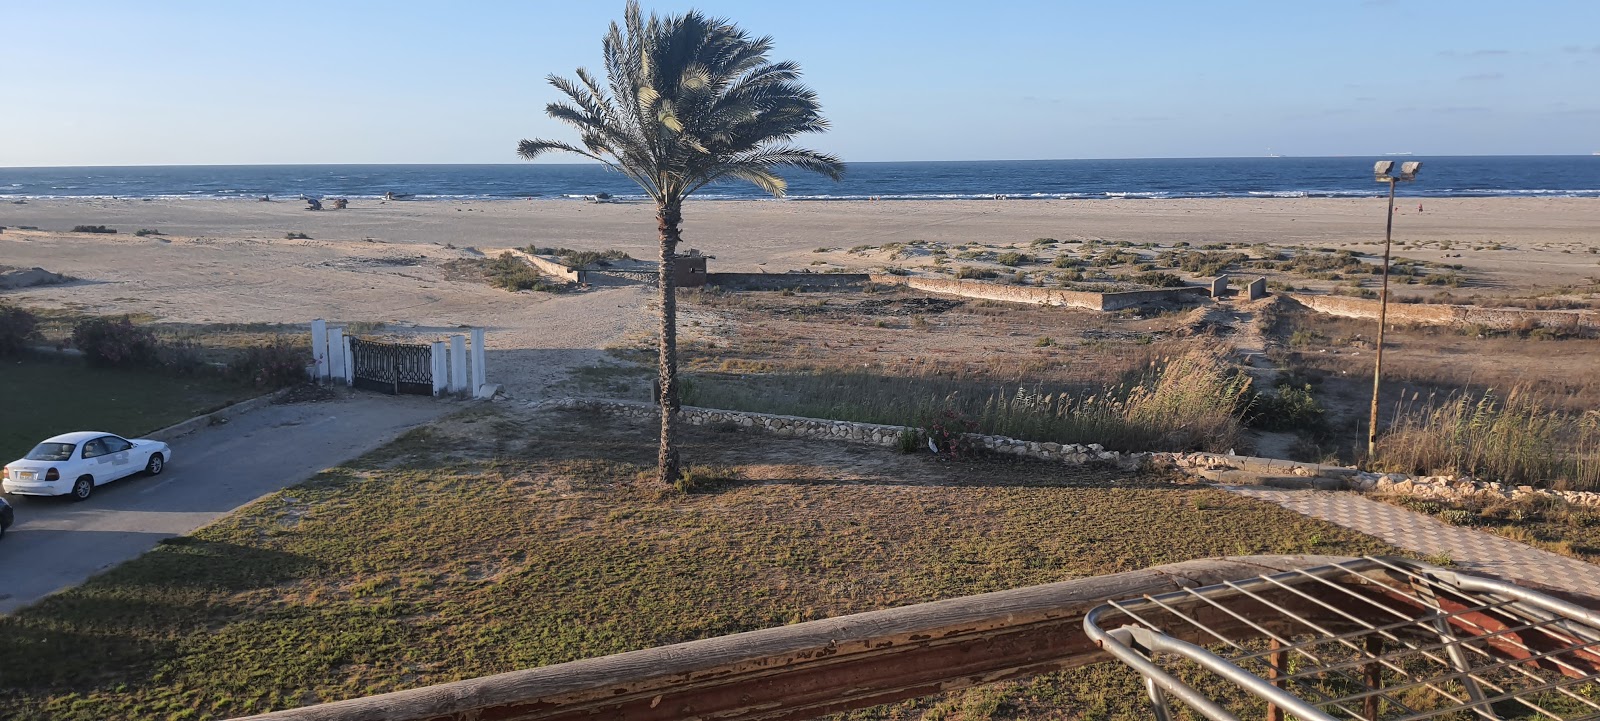 Al Abtal Beach'in fotoğrafı kısmen temiz temizlik seviyesi ile